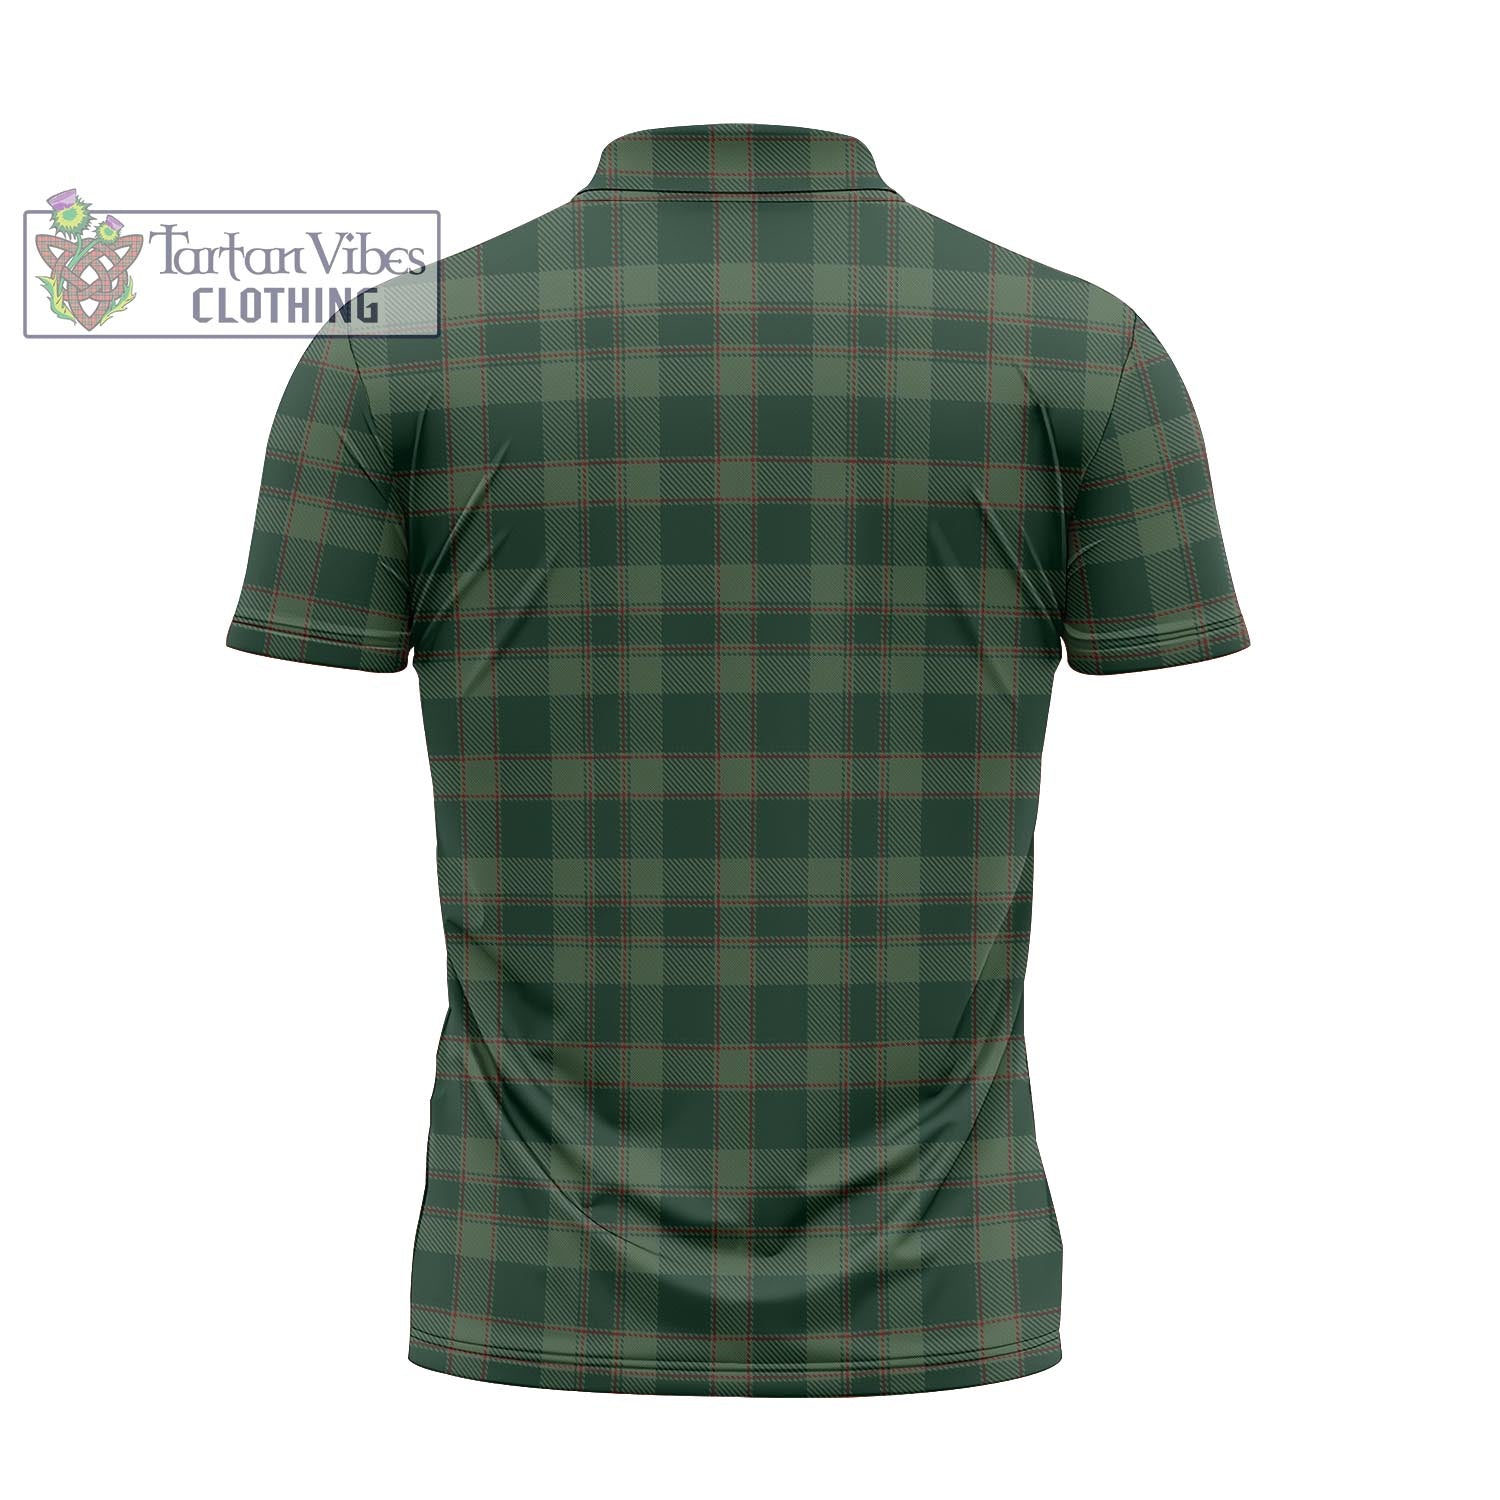 Tartan Vibes Clothing Donachie of Brockloch Hunting Tartan Zipper Polo Shirt